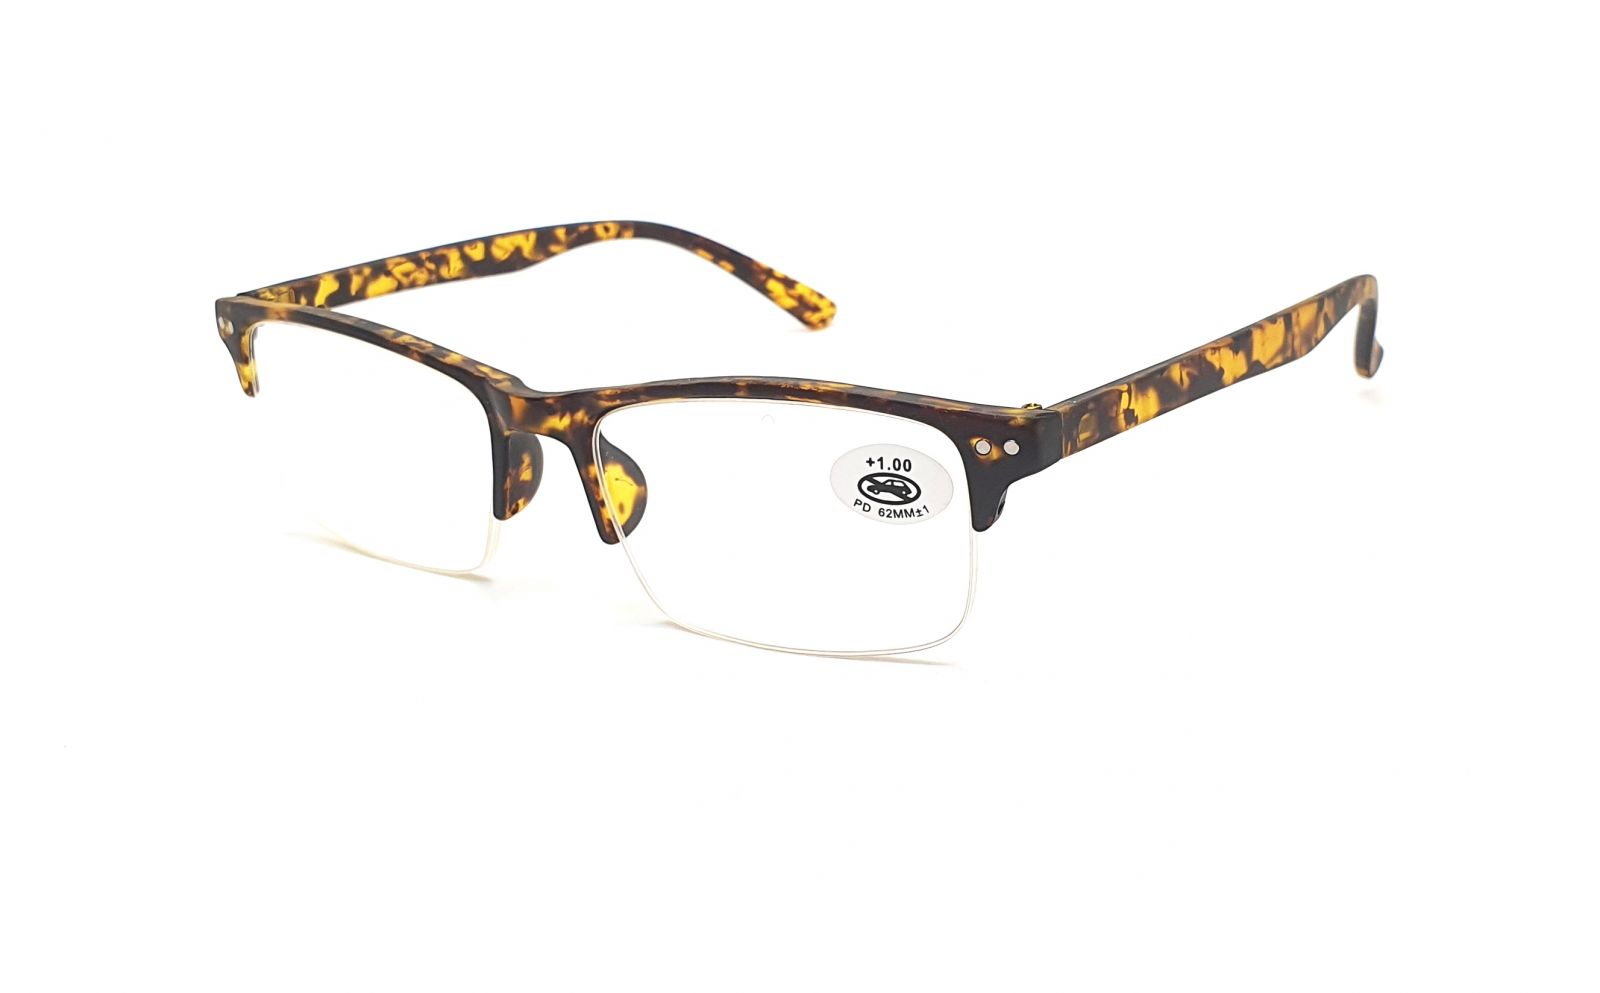 Dioptrické brýle P8011 +3,50 brown